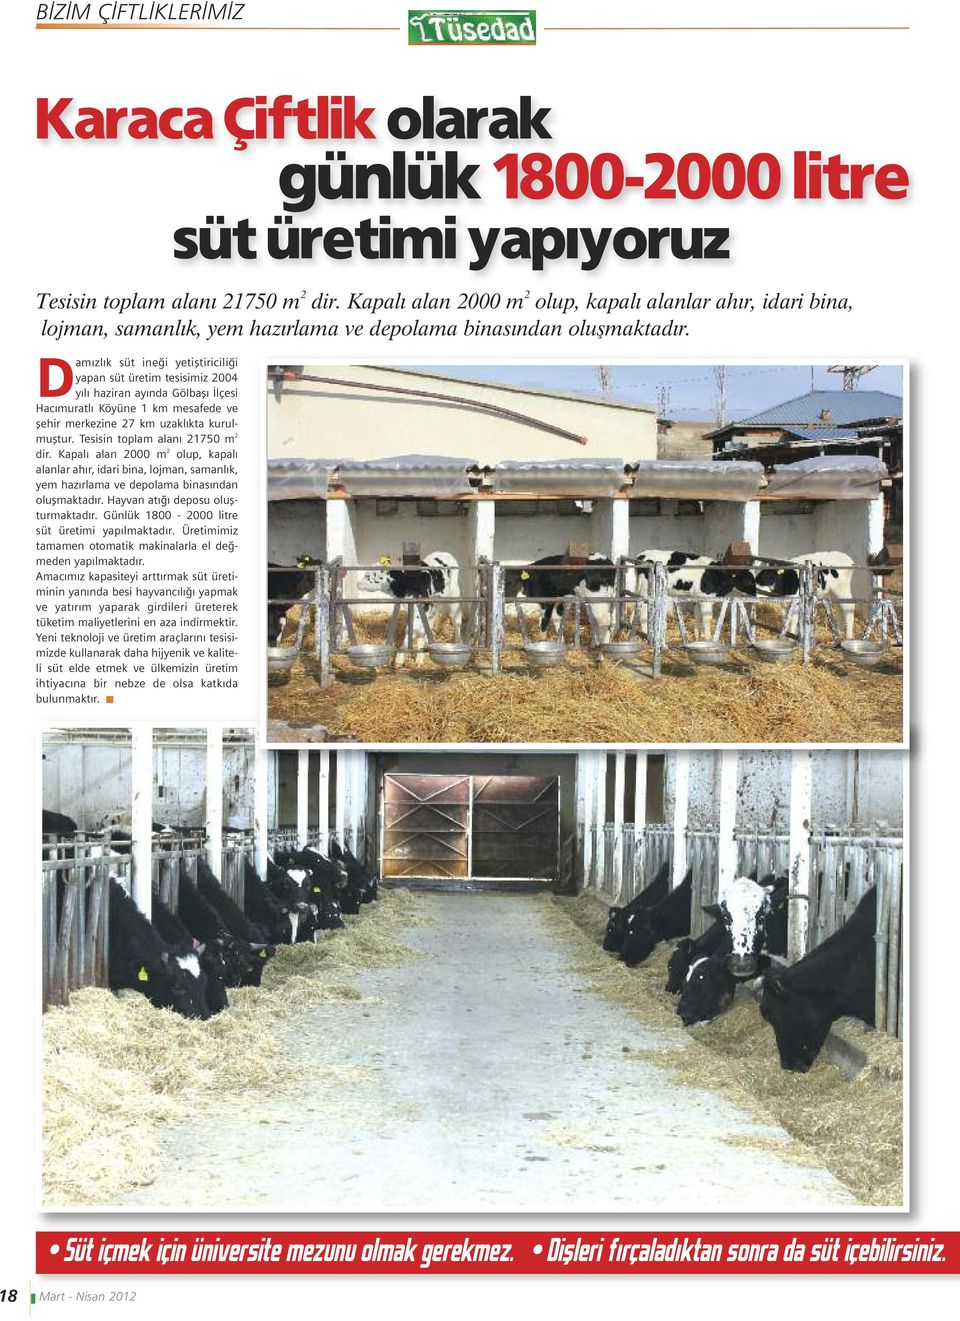 Damızlık süt ineği yetiştiriciliği yapan süt üretim tesisimiz 2004 yılı haziran ayında Gölbaşı İlçesi Hacımuratlı Köyüne 1 km mesafede ve şehir merkezine 27 km uzaklıkta kurulmuştur.